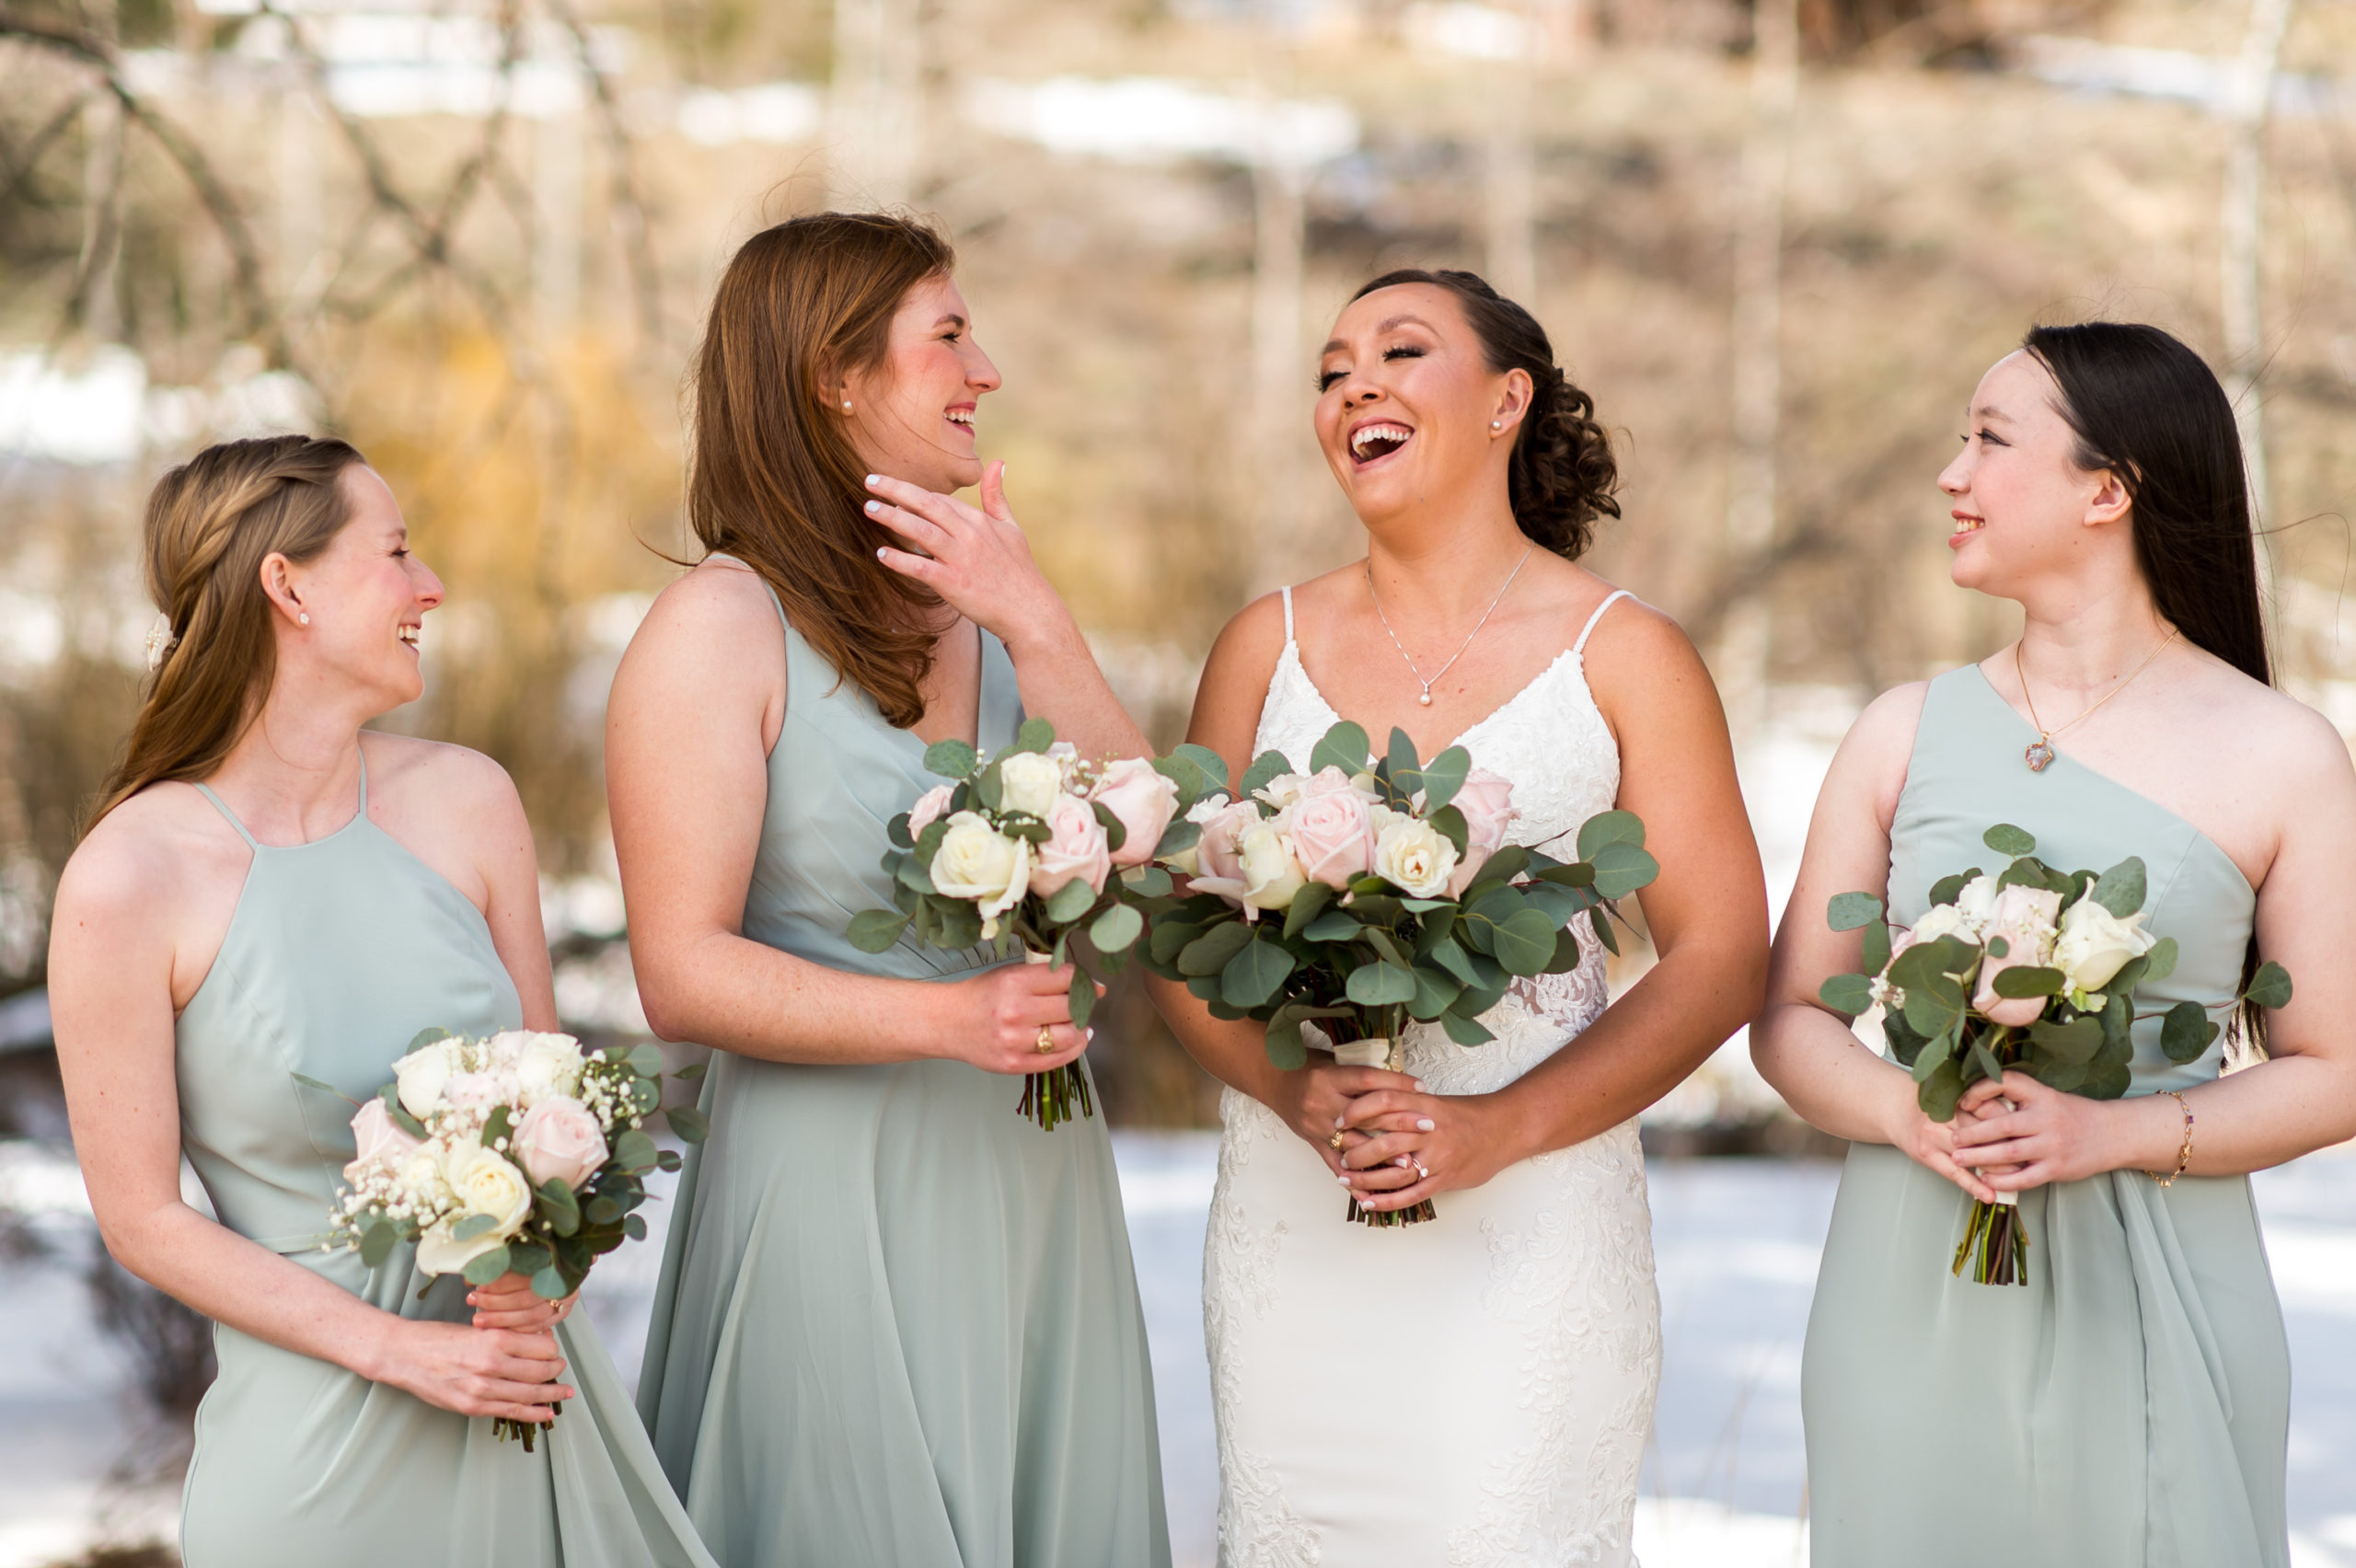 The bride and bridesmaids laugh during the bride's YMCA of the Rockies wedding in Estes Park, Colorado.